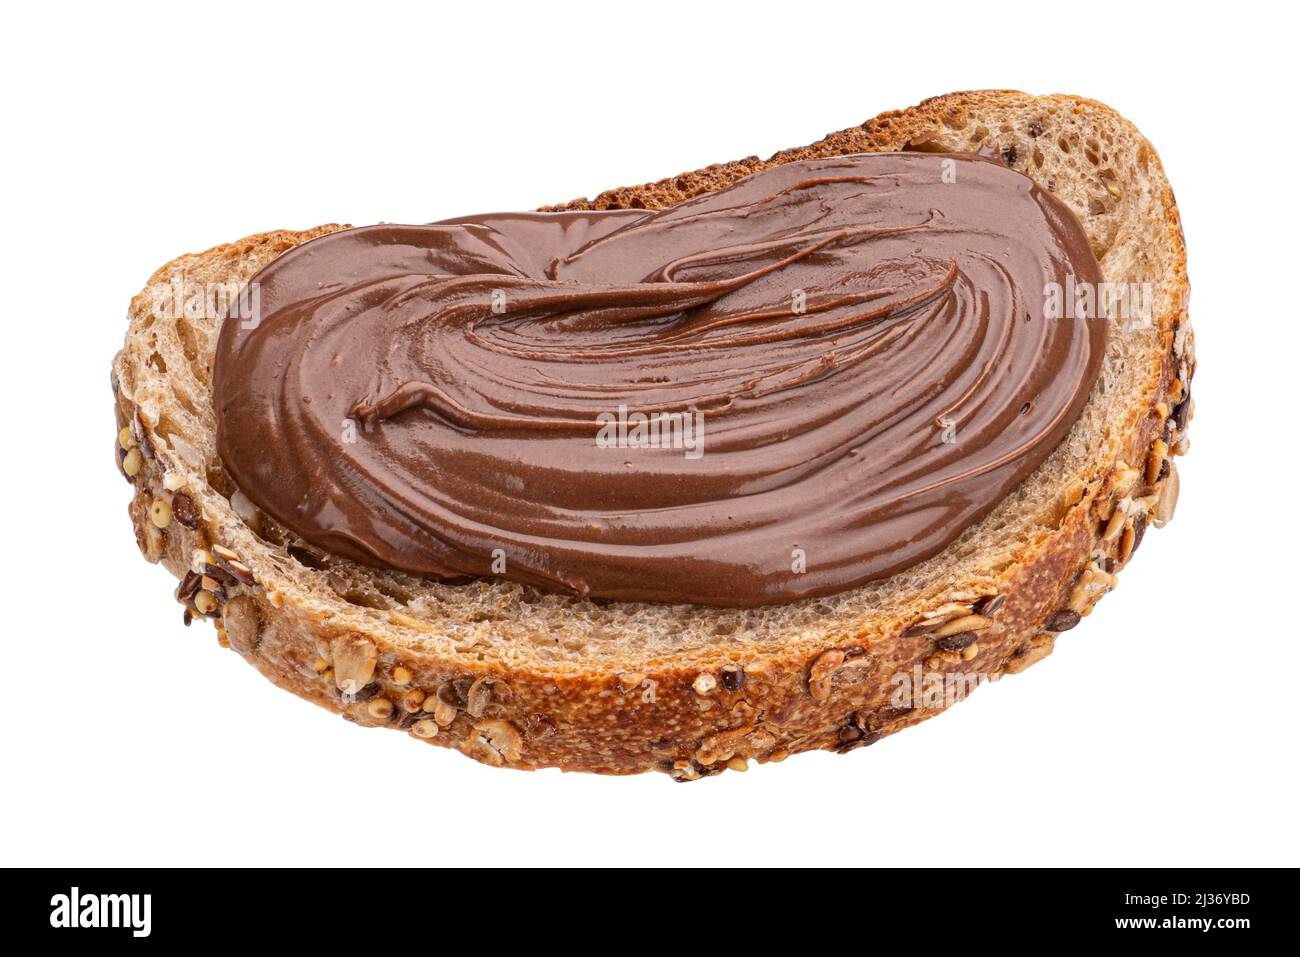 Pane con crema di cioccolato isolato su sfondo bianco Foto Stock